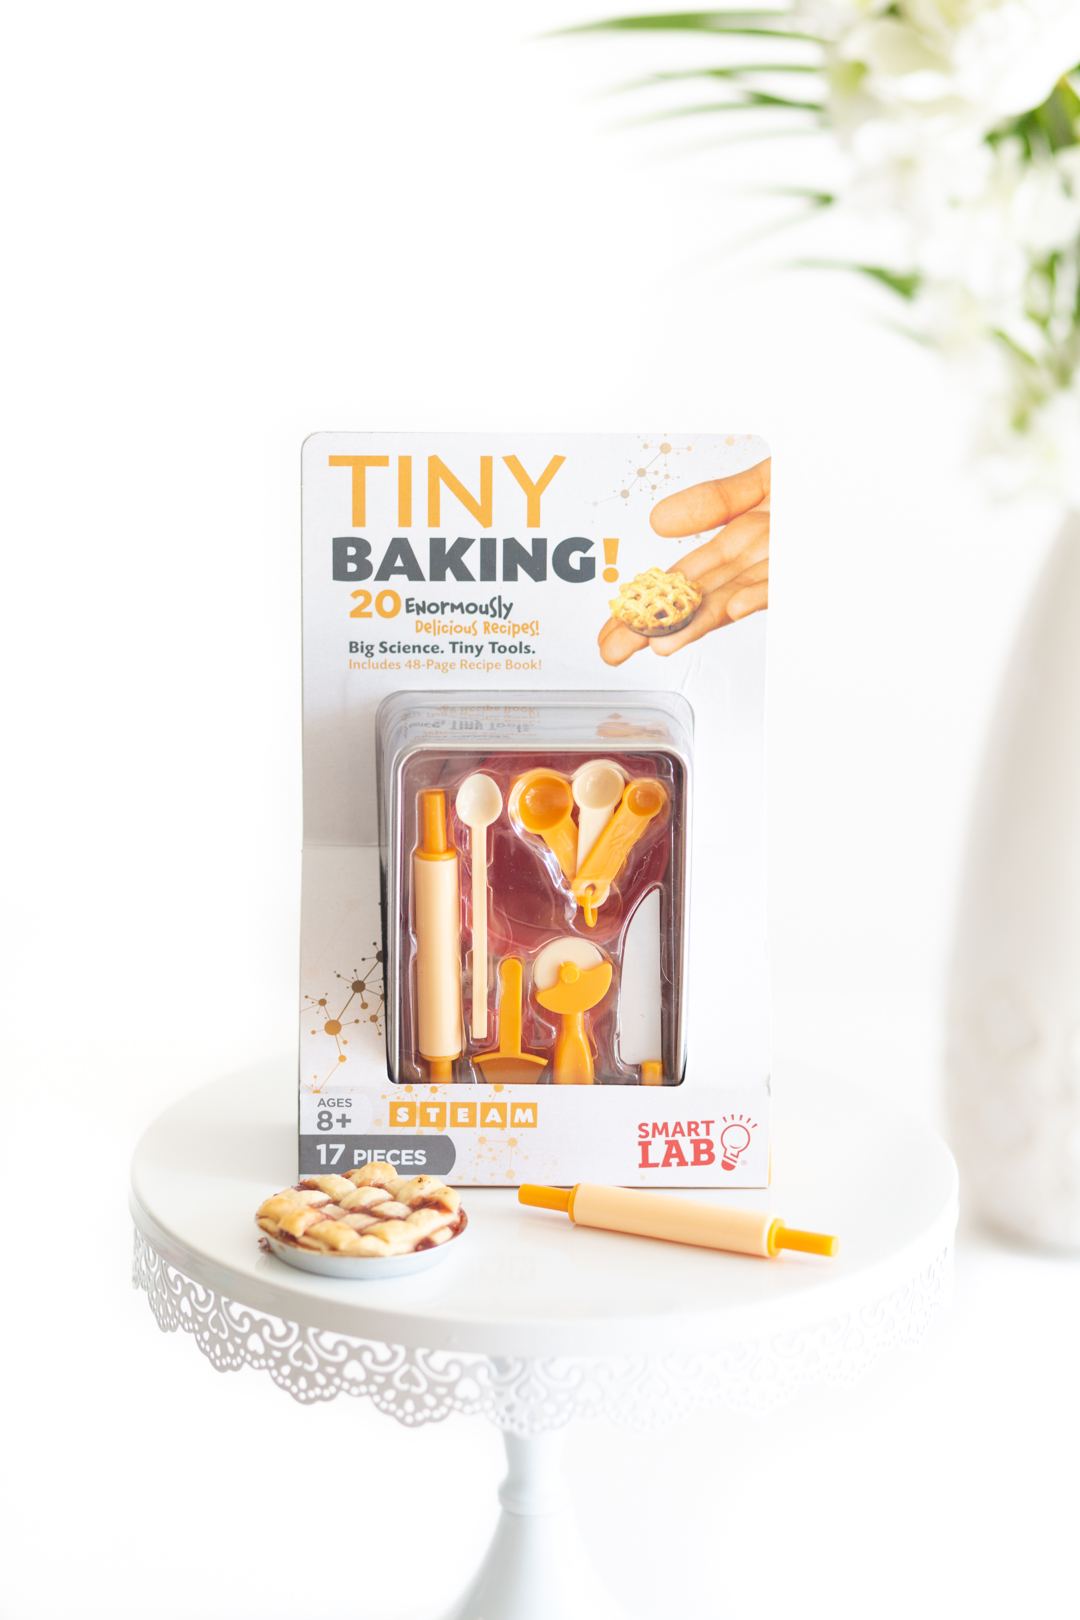 Making Tiny Treats with a Mini Baking Kit